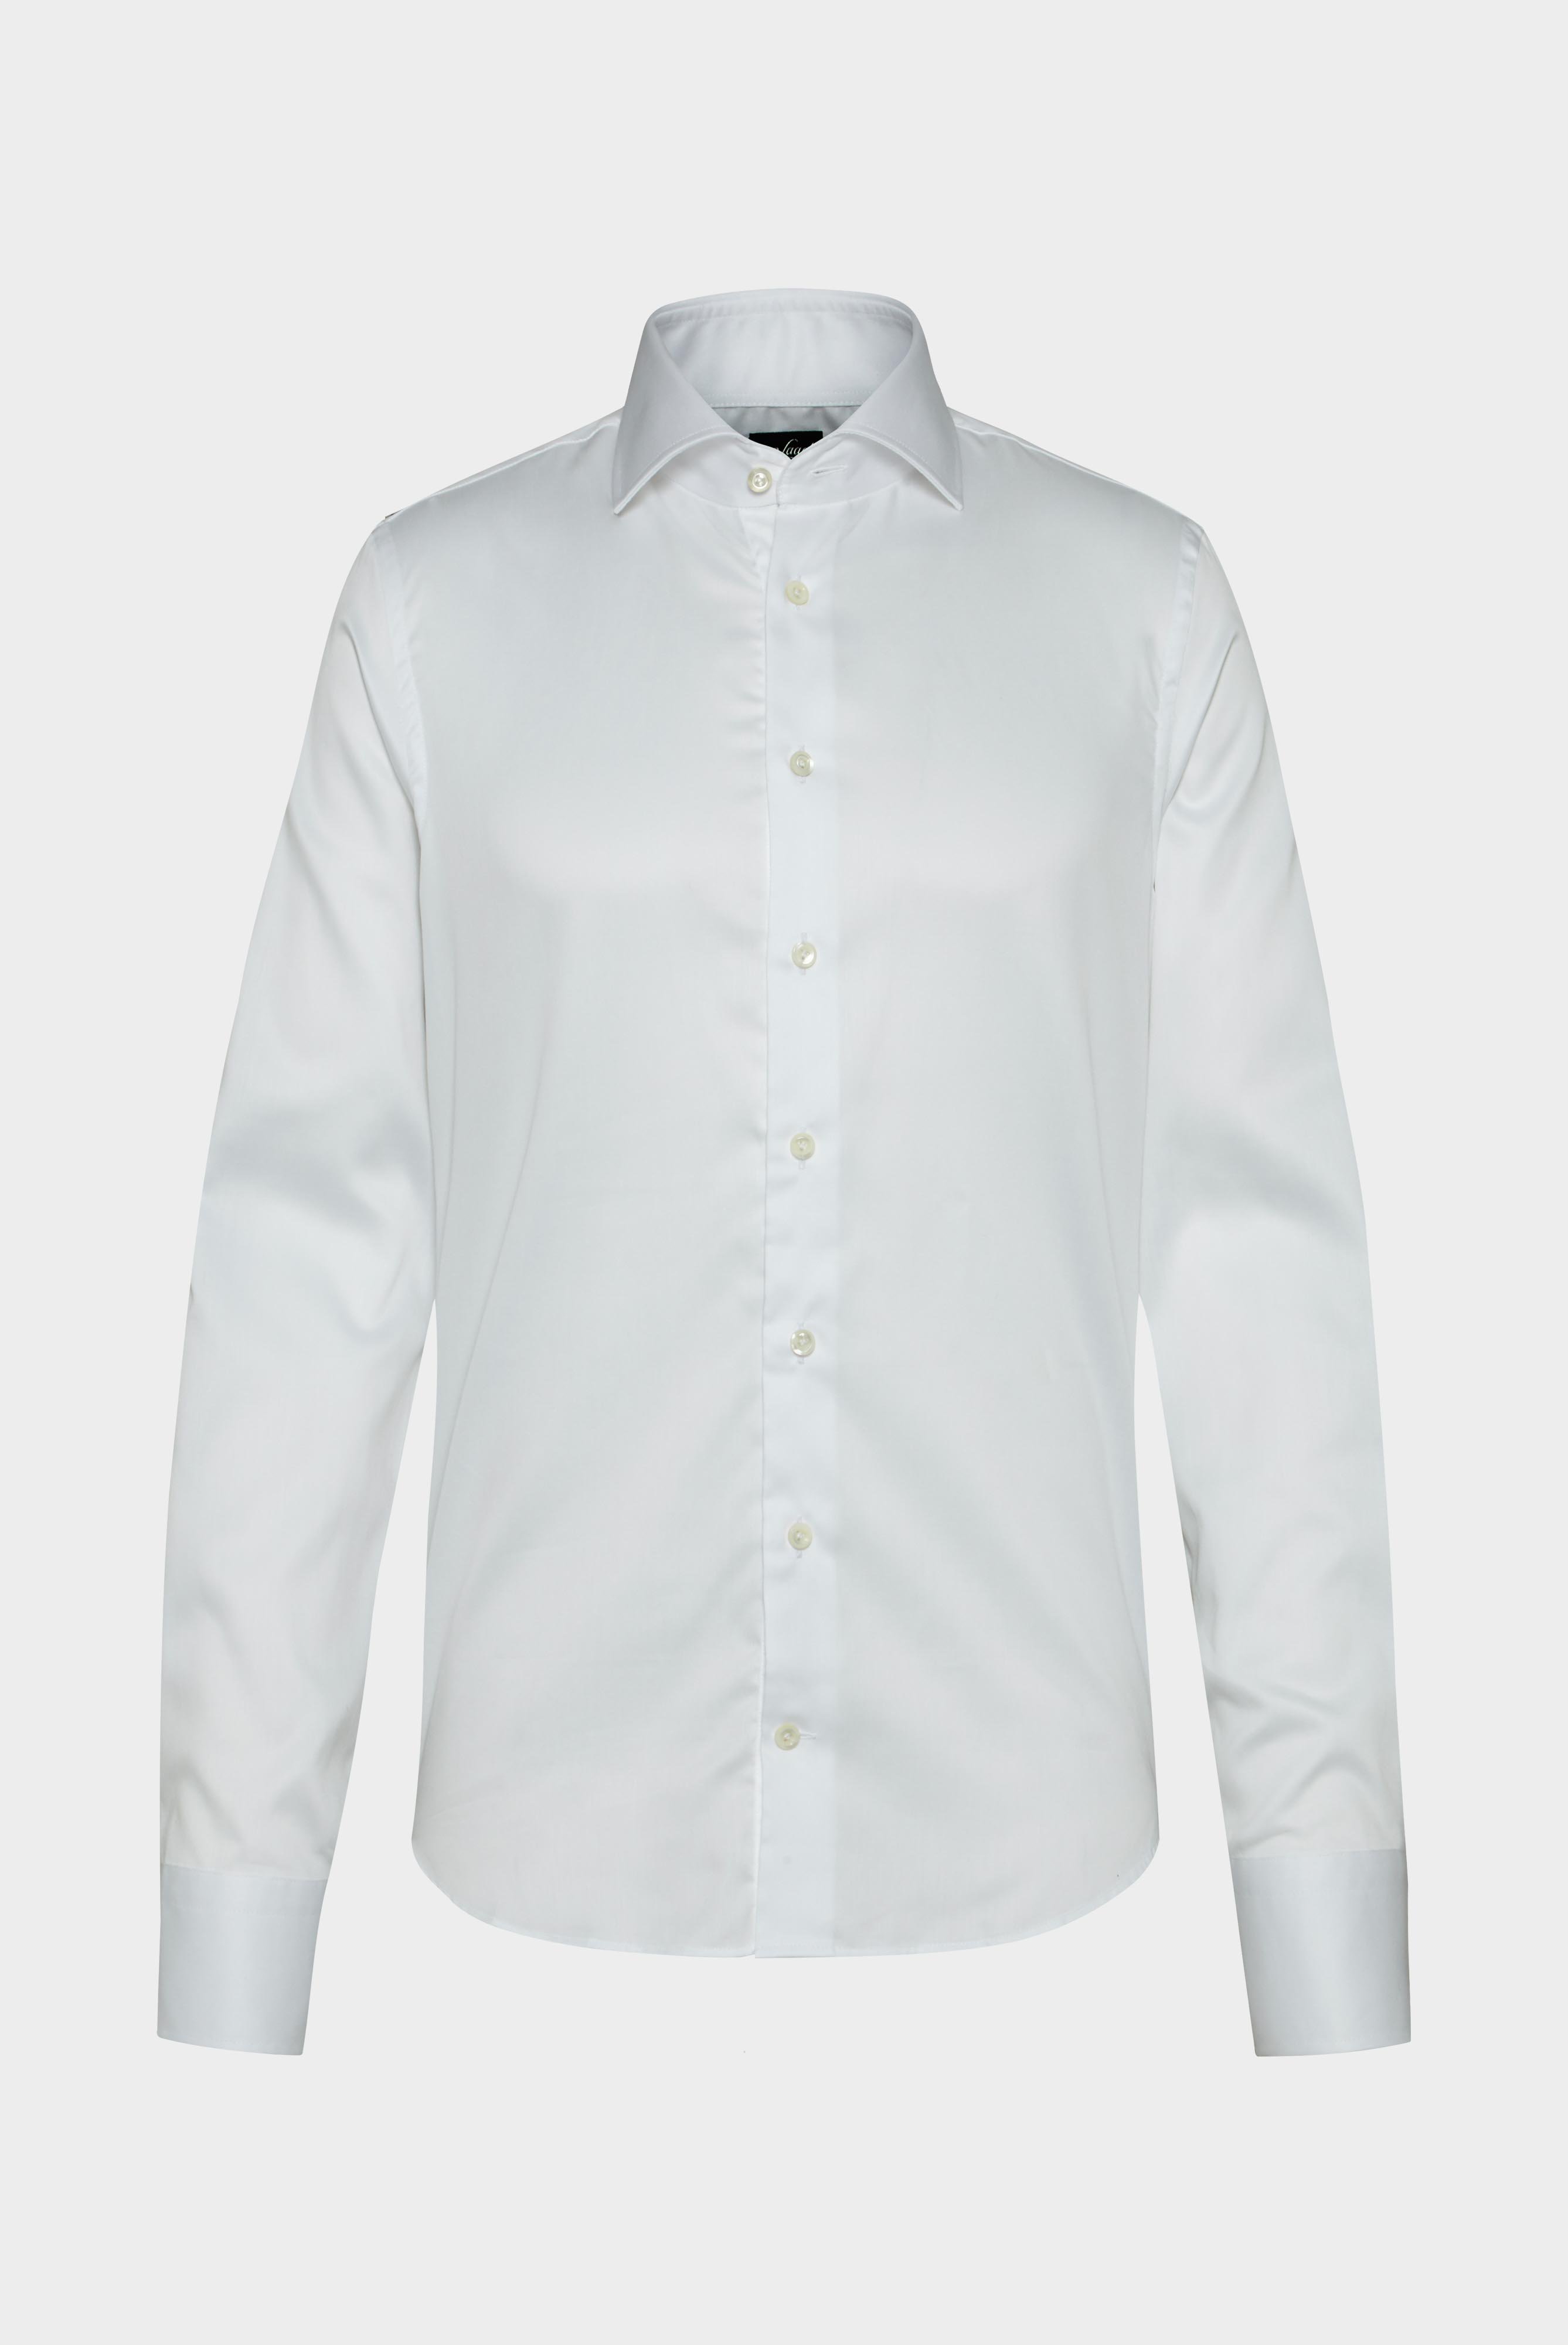 Bügelleichte Hemden+Bügelfreies Twill Hemd Slim Fit+20.2019.BQ.132241.000.44